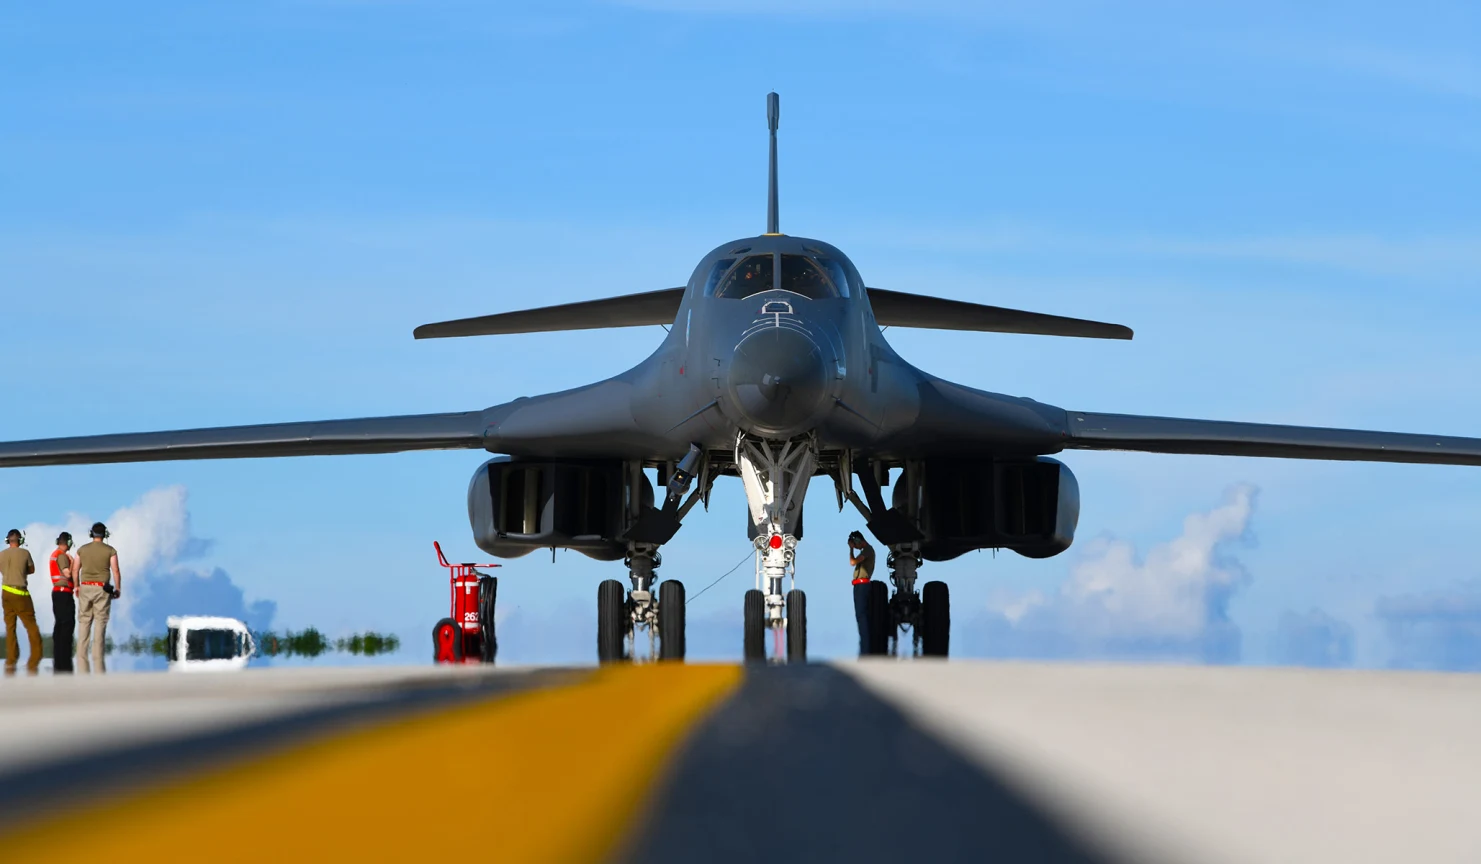 L'armée de l'air américaine souhaite retirer le premier bombardier stratégique supersonique B-1B Lancer depuis 2021 - tous les appareils seront retirés du service d'ici le début des années 2030.